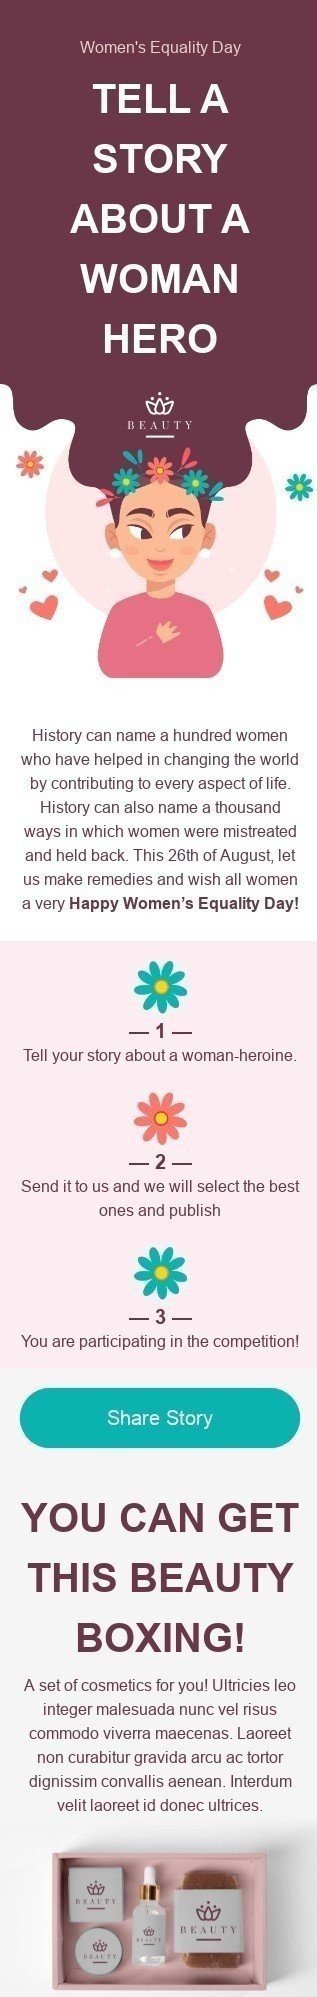 Шаблон письма к празднику День Равенства Женщин «Расскажи свою историю» для индустрии «Косметика» мобильный вид